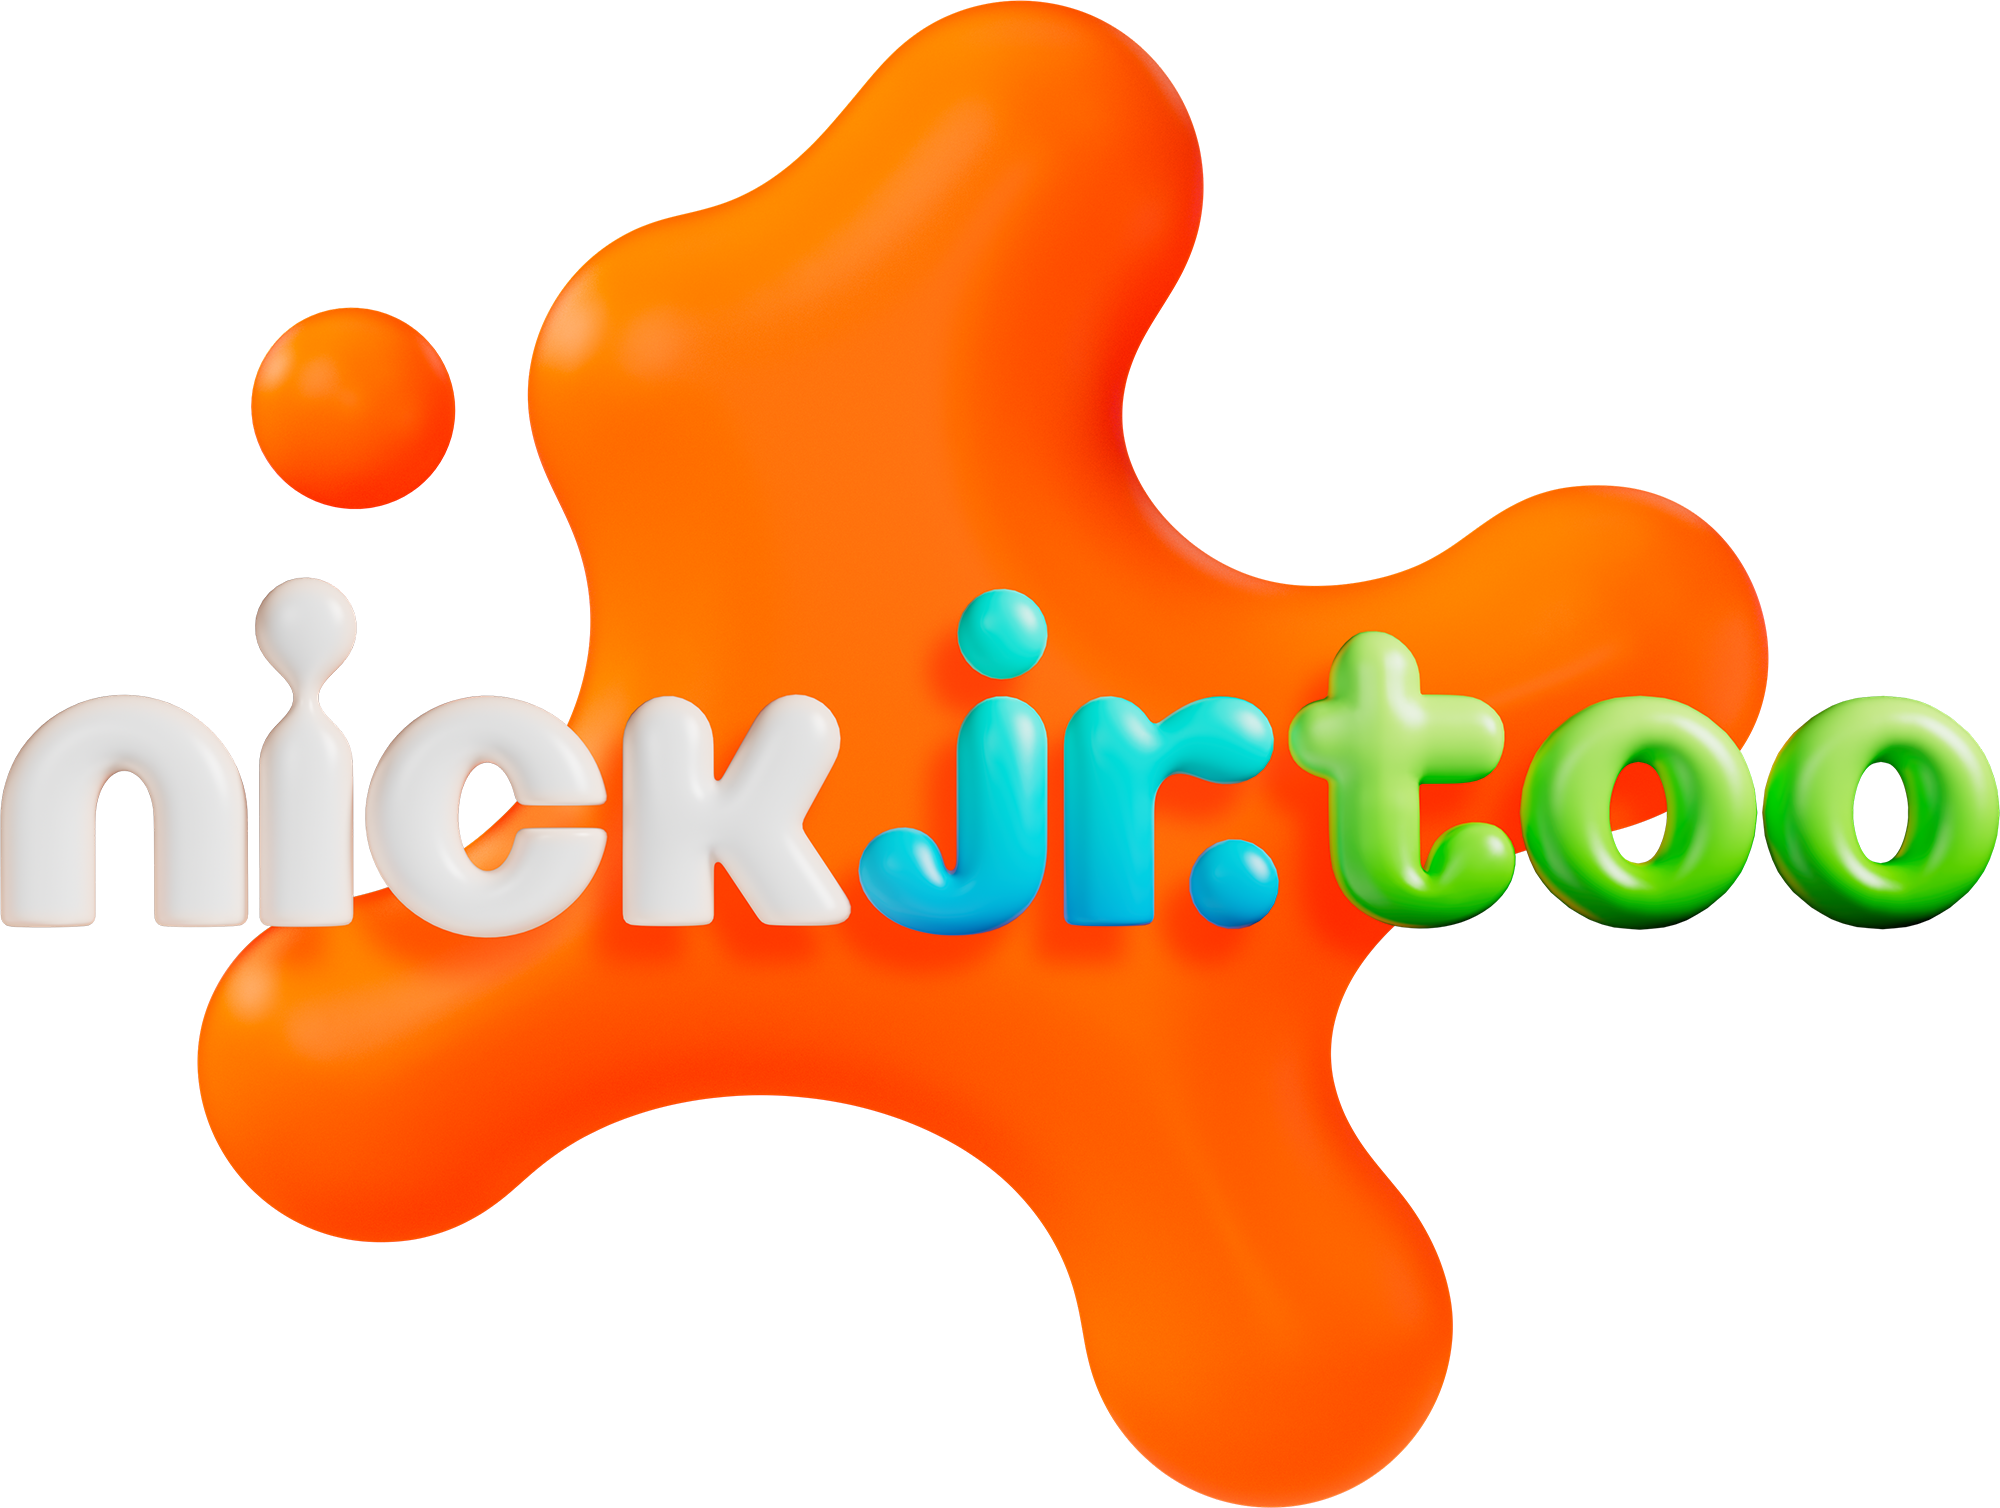 Nick Jr. Too, Nickelodeon